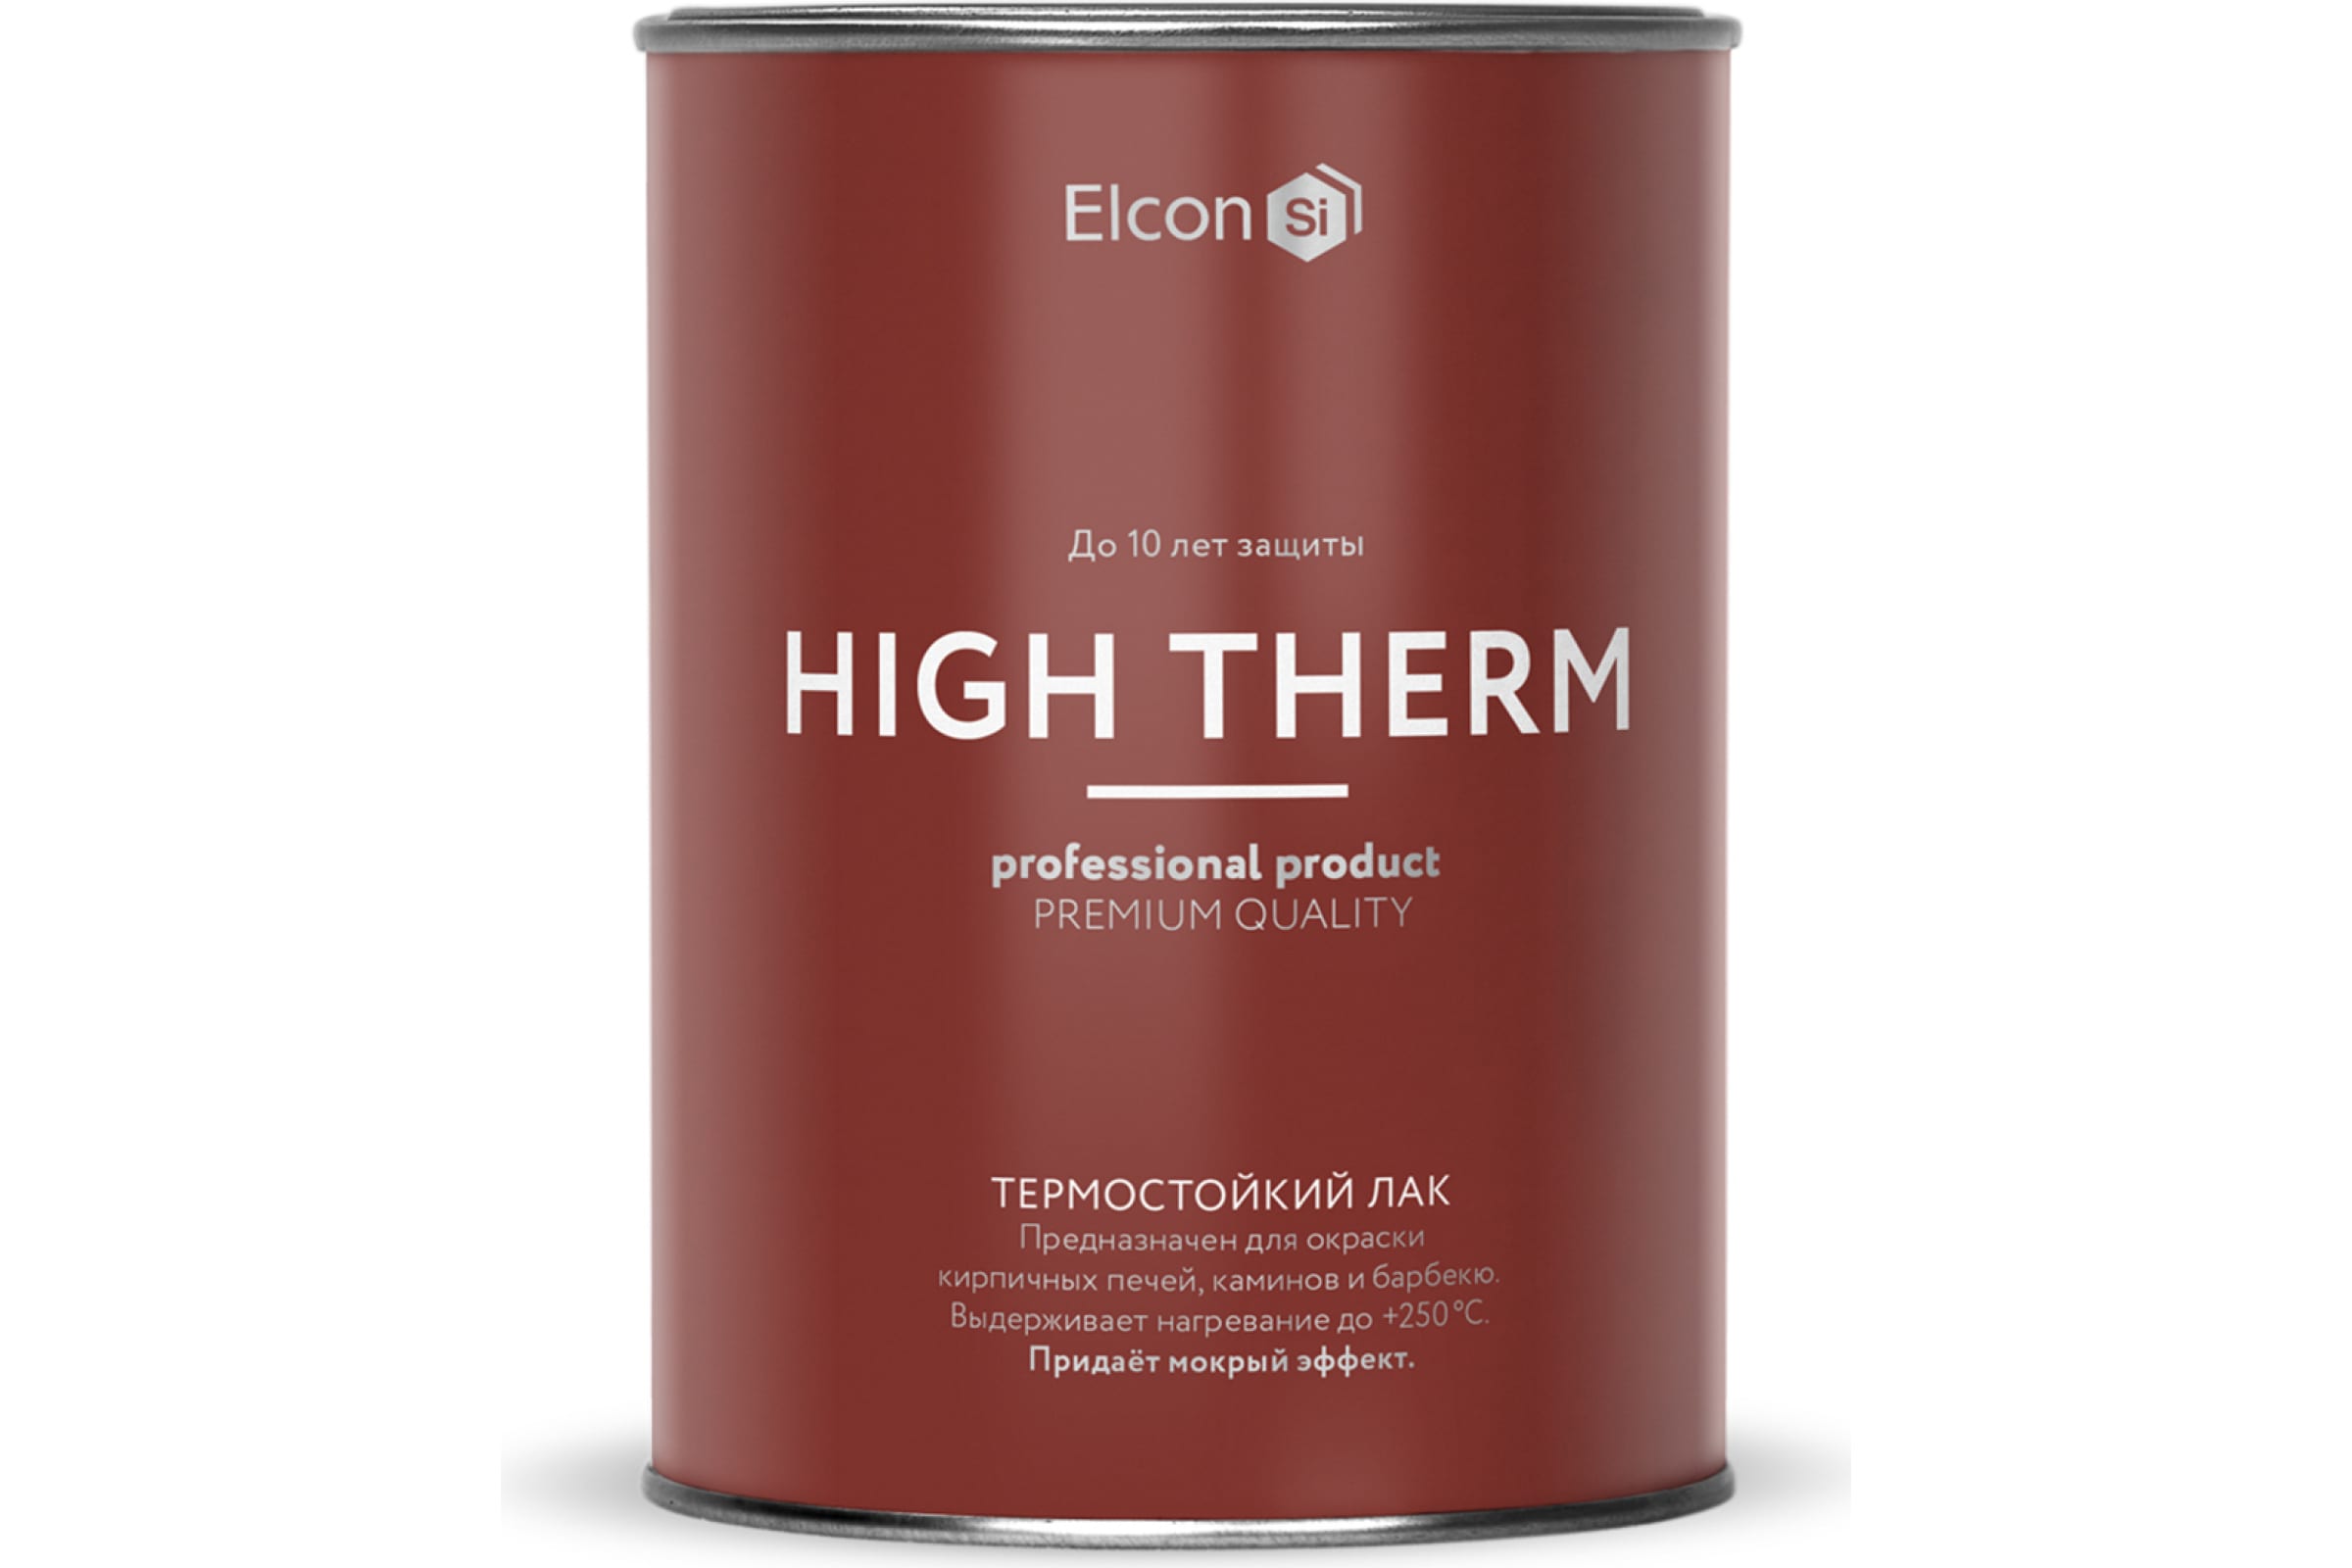 Термостойкий лак Elcon High Therm, бесцветный до +250 градусов, 1 л